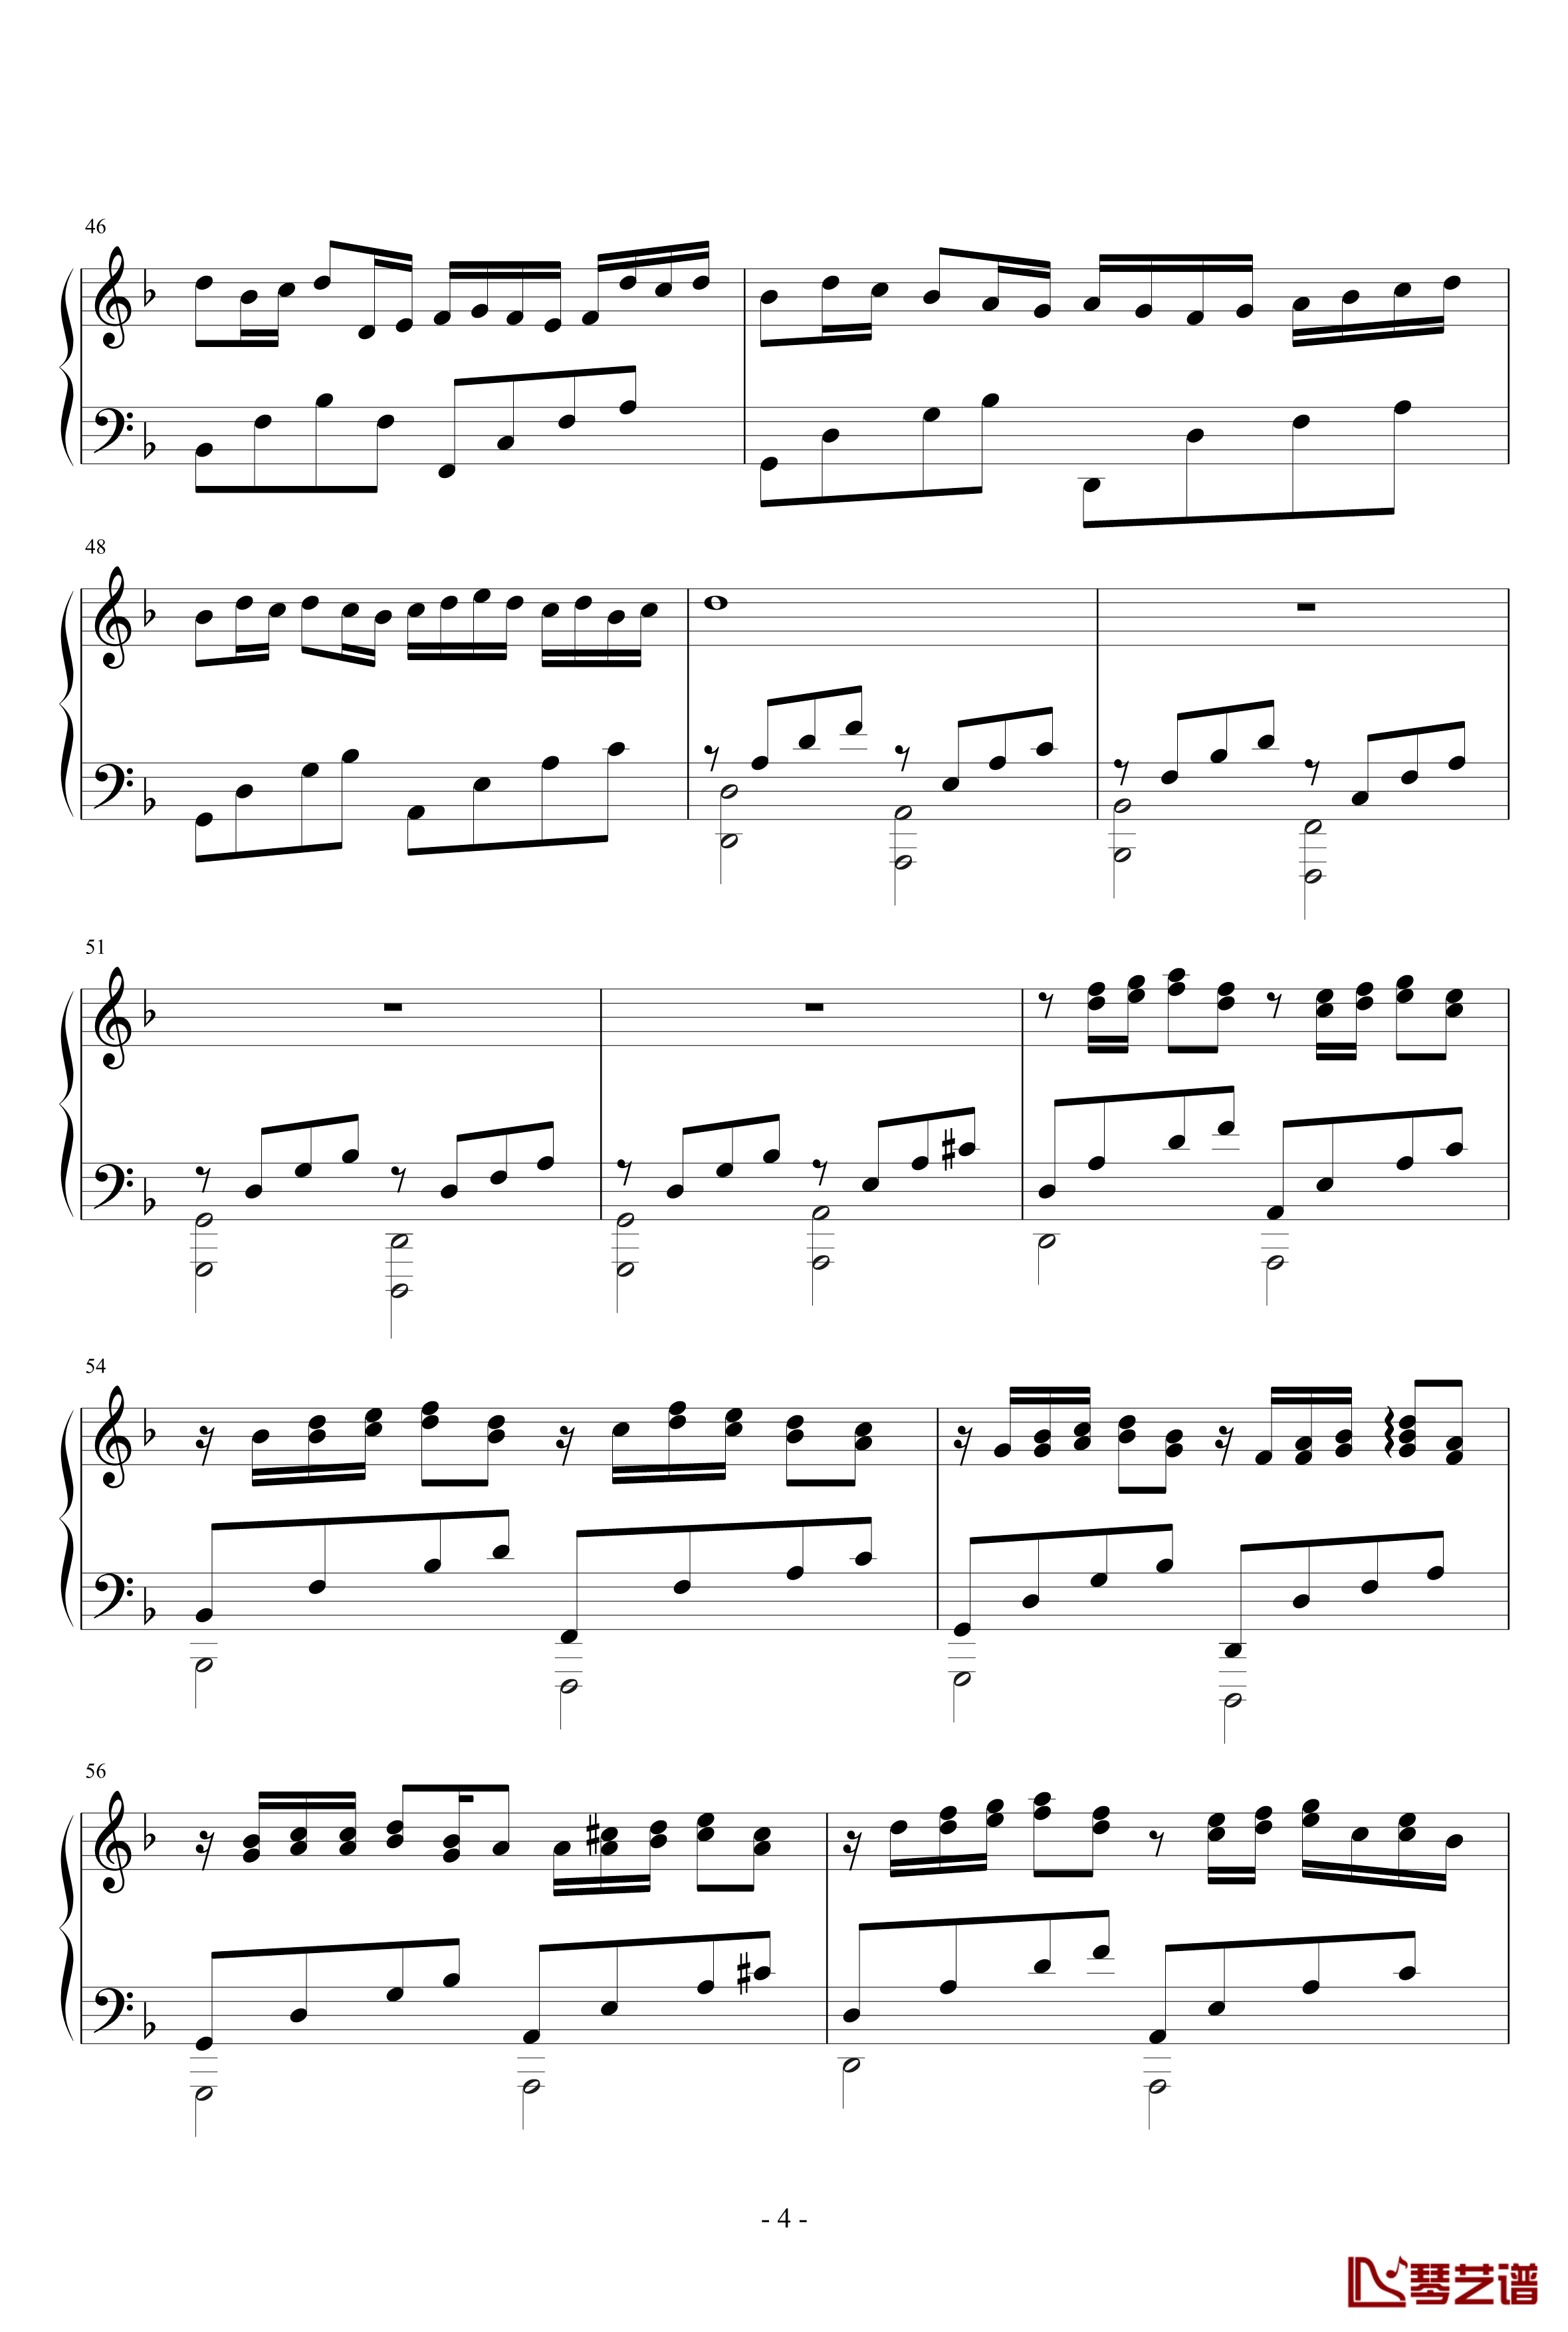 卡农小调版钢琴谱-帕赫贝尔-Pachelbel4